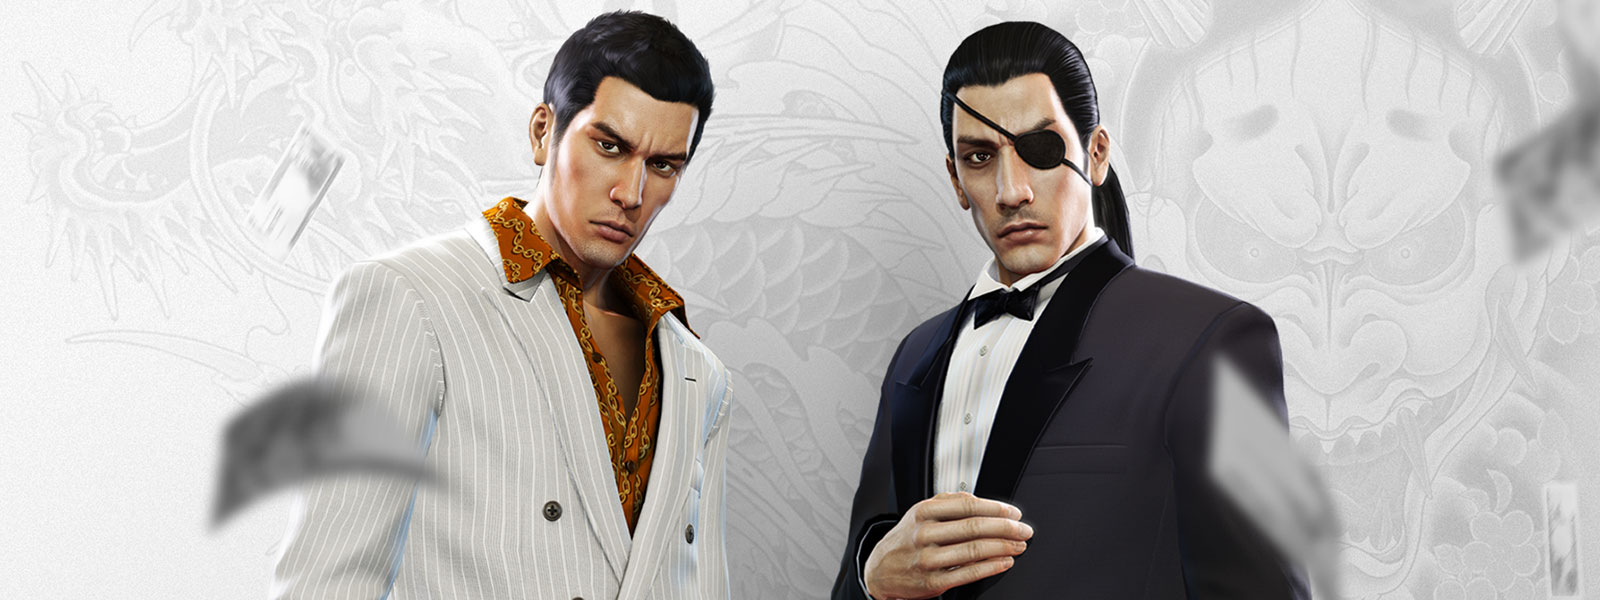 Dwie postacie z serii Yakuza w fantazyjnych garniturach, obserwujące spadające wokół nich pieniądze, z biało-szarym tatuażem smoka w tle